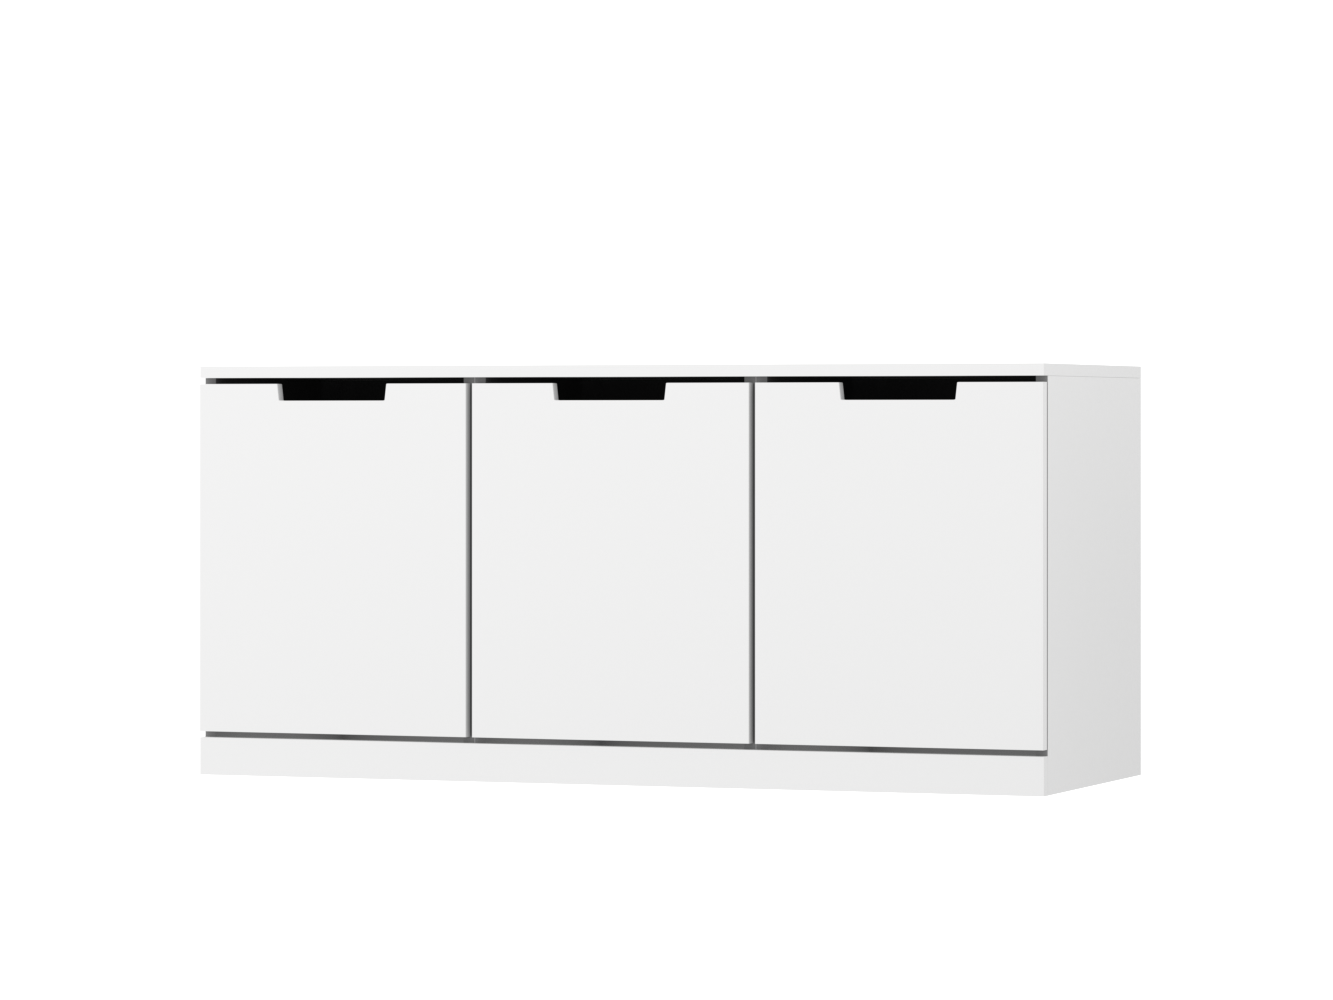  Комод Нордли 45 white ИКЕА (IKEA) изображение товара